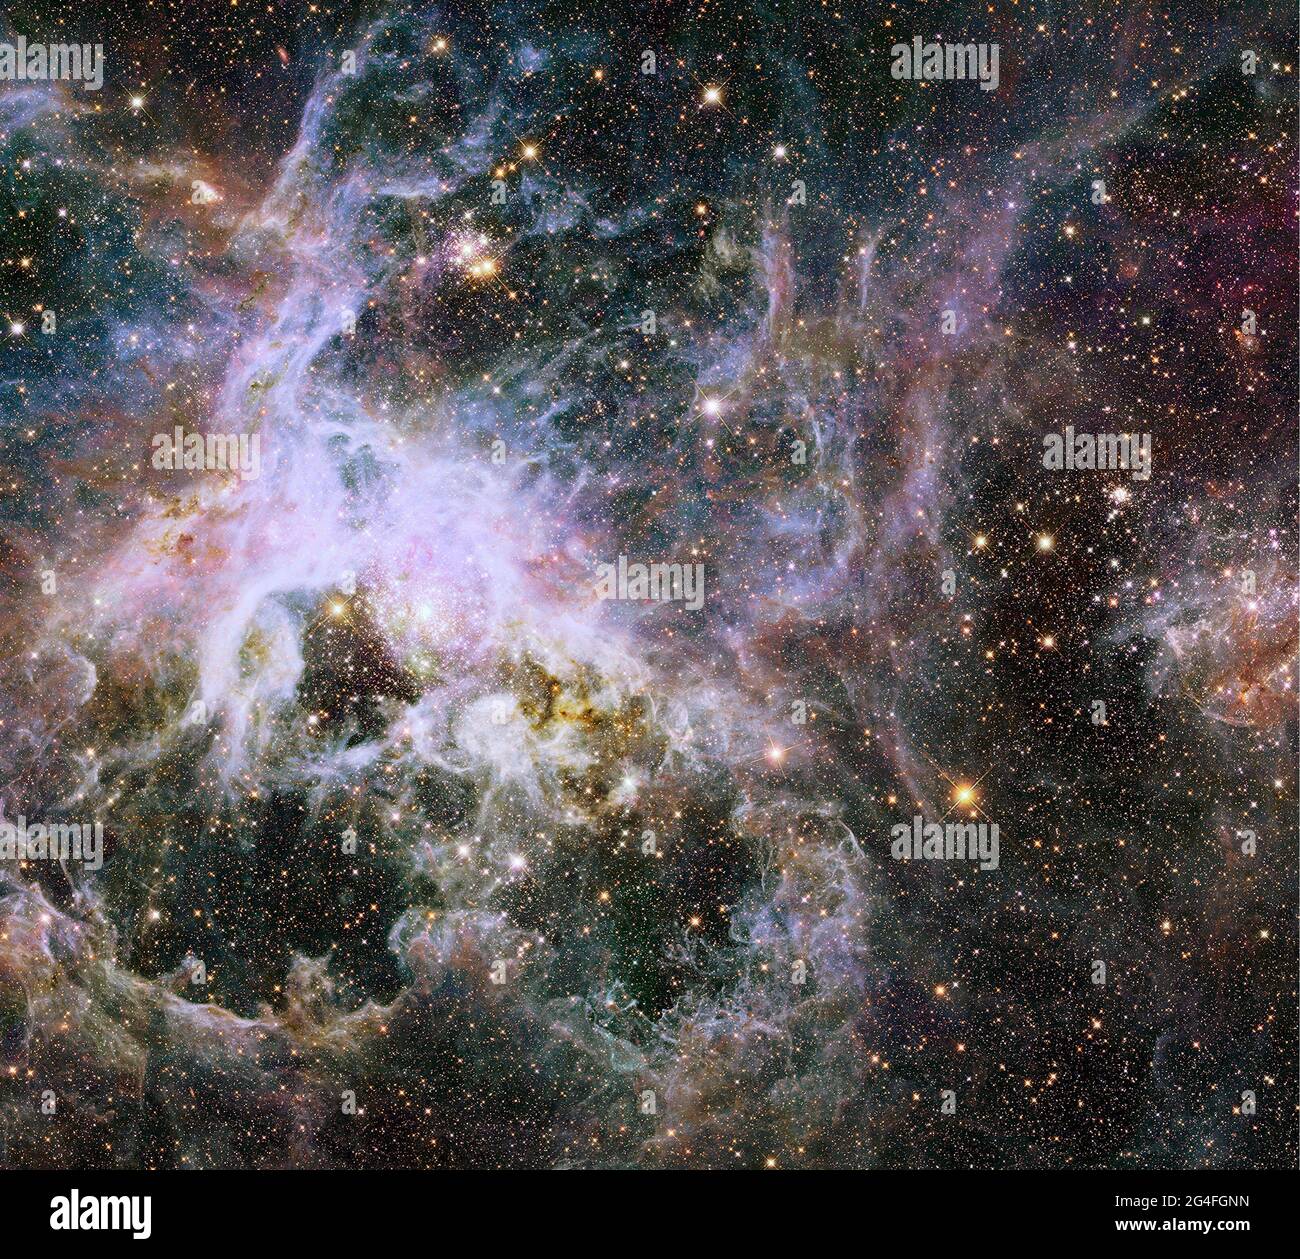 TRANTULAR NEBULA, ESPACE EXTRA-ATMOSPHÉRIQUE - 09 janvier 2014 - comme soulever un voile géant, la vision proche infrarouge du télescope spatial Hubble de la NASA couvre une daz Banque D'Images